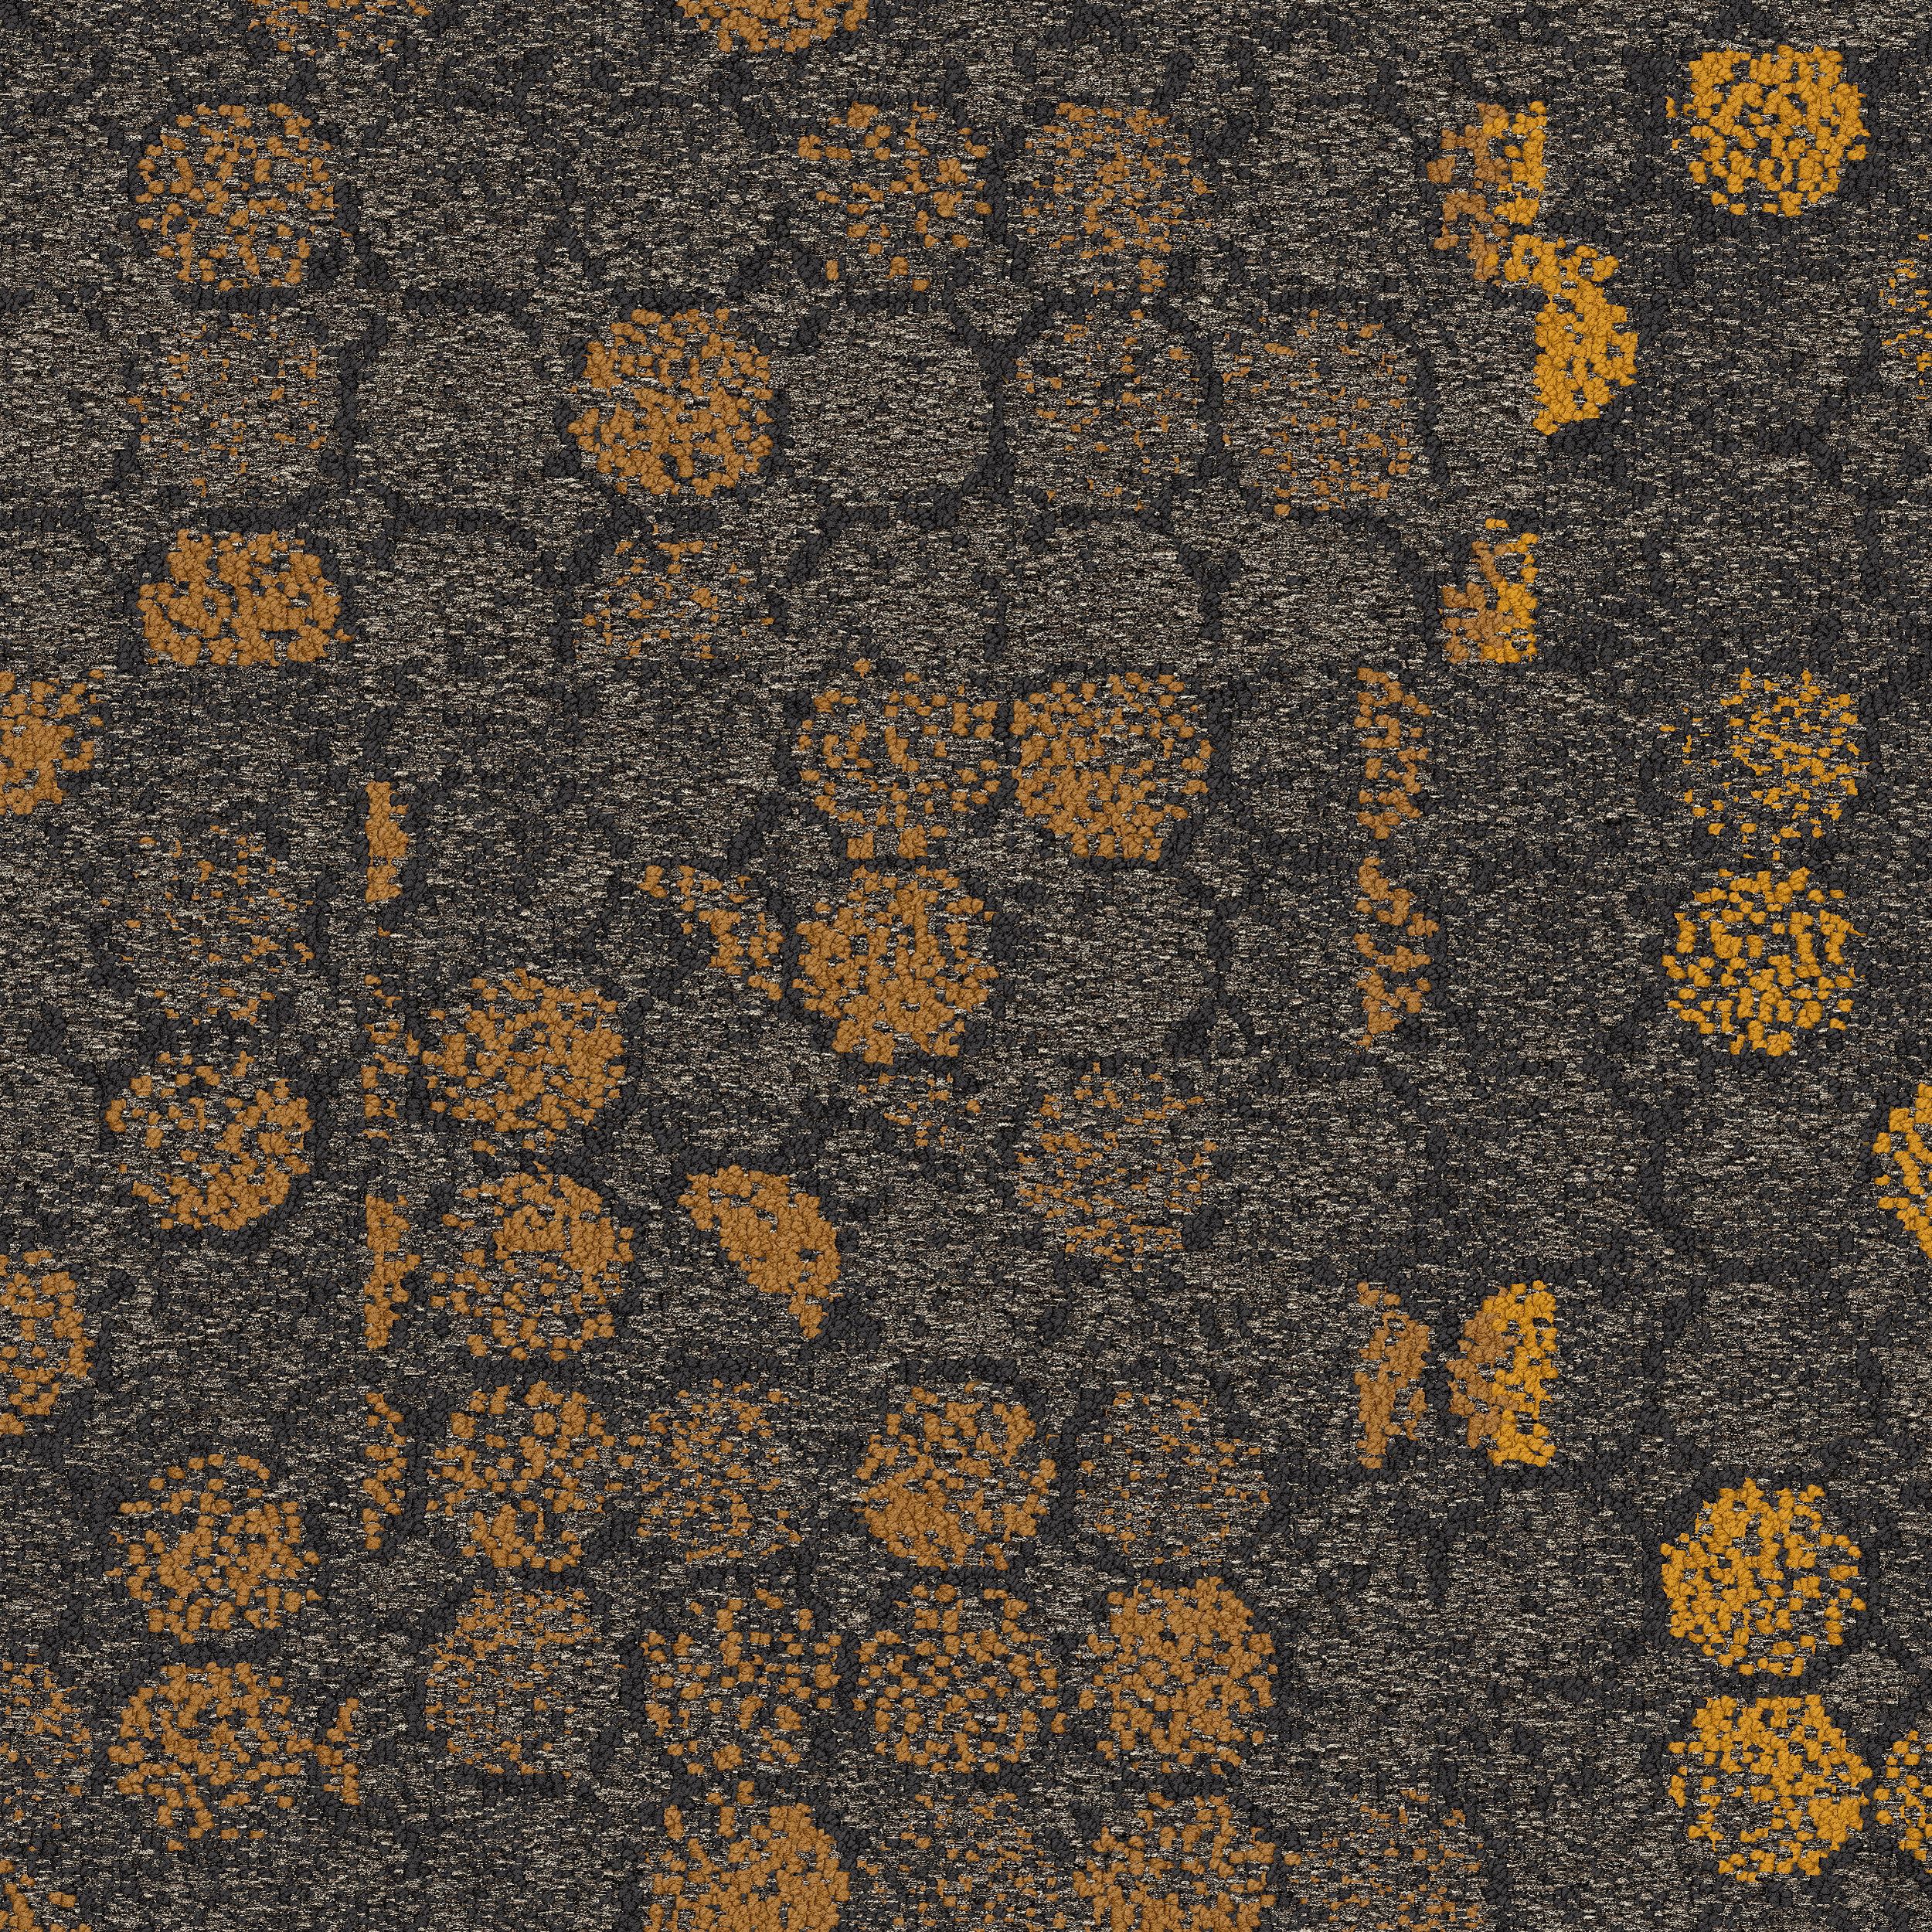 Broome Street Carpet Tile In Yellow Glass afbeeldingnummer 2